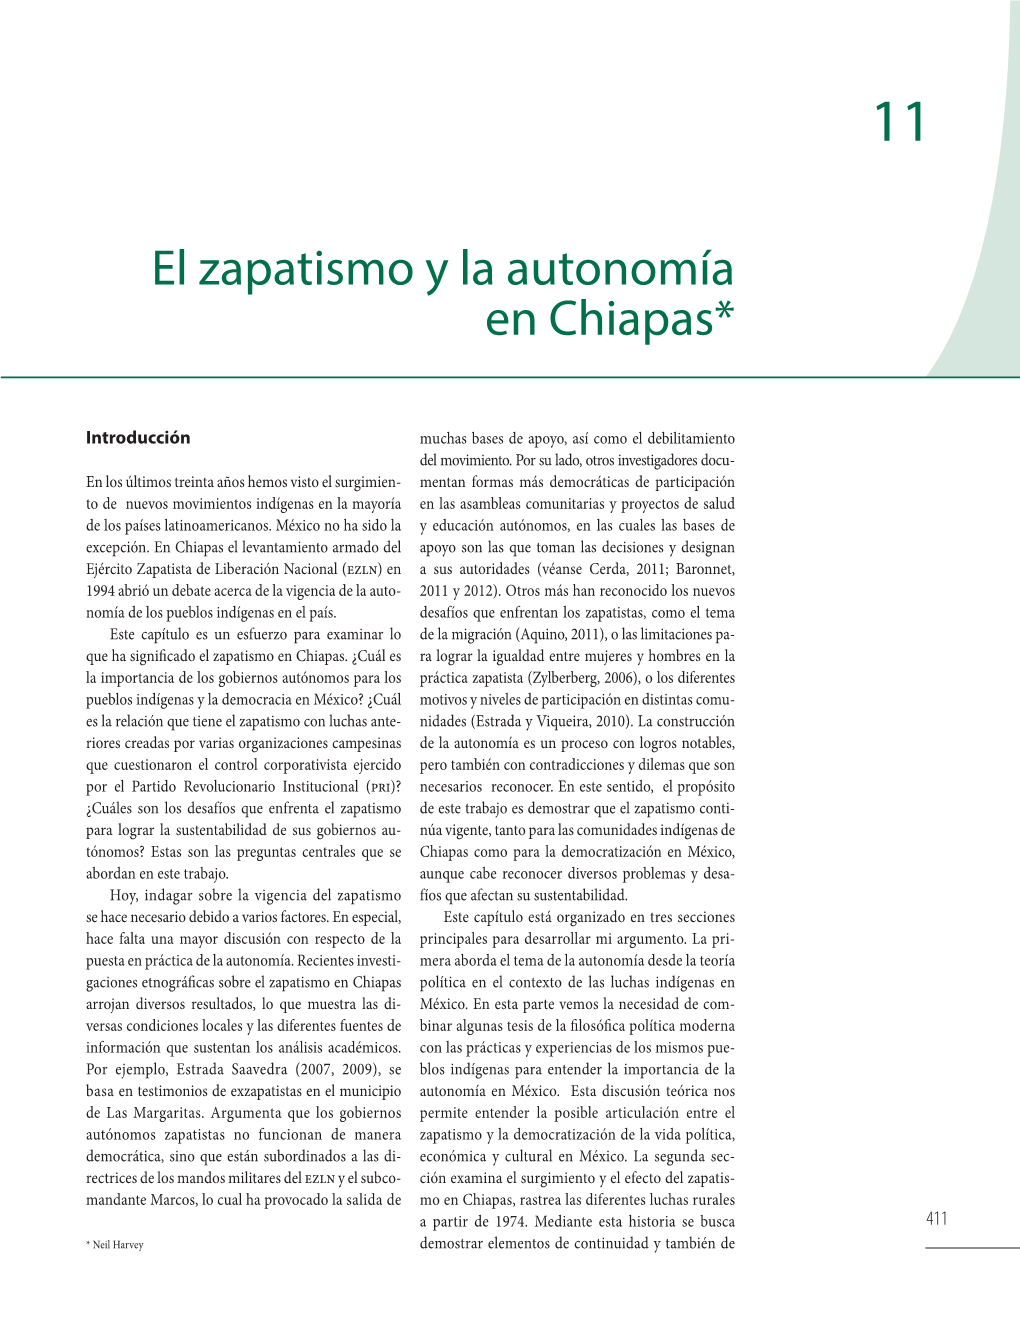 El Zapatismo Y La Autonomía En Chiapas*